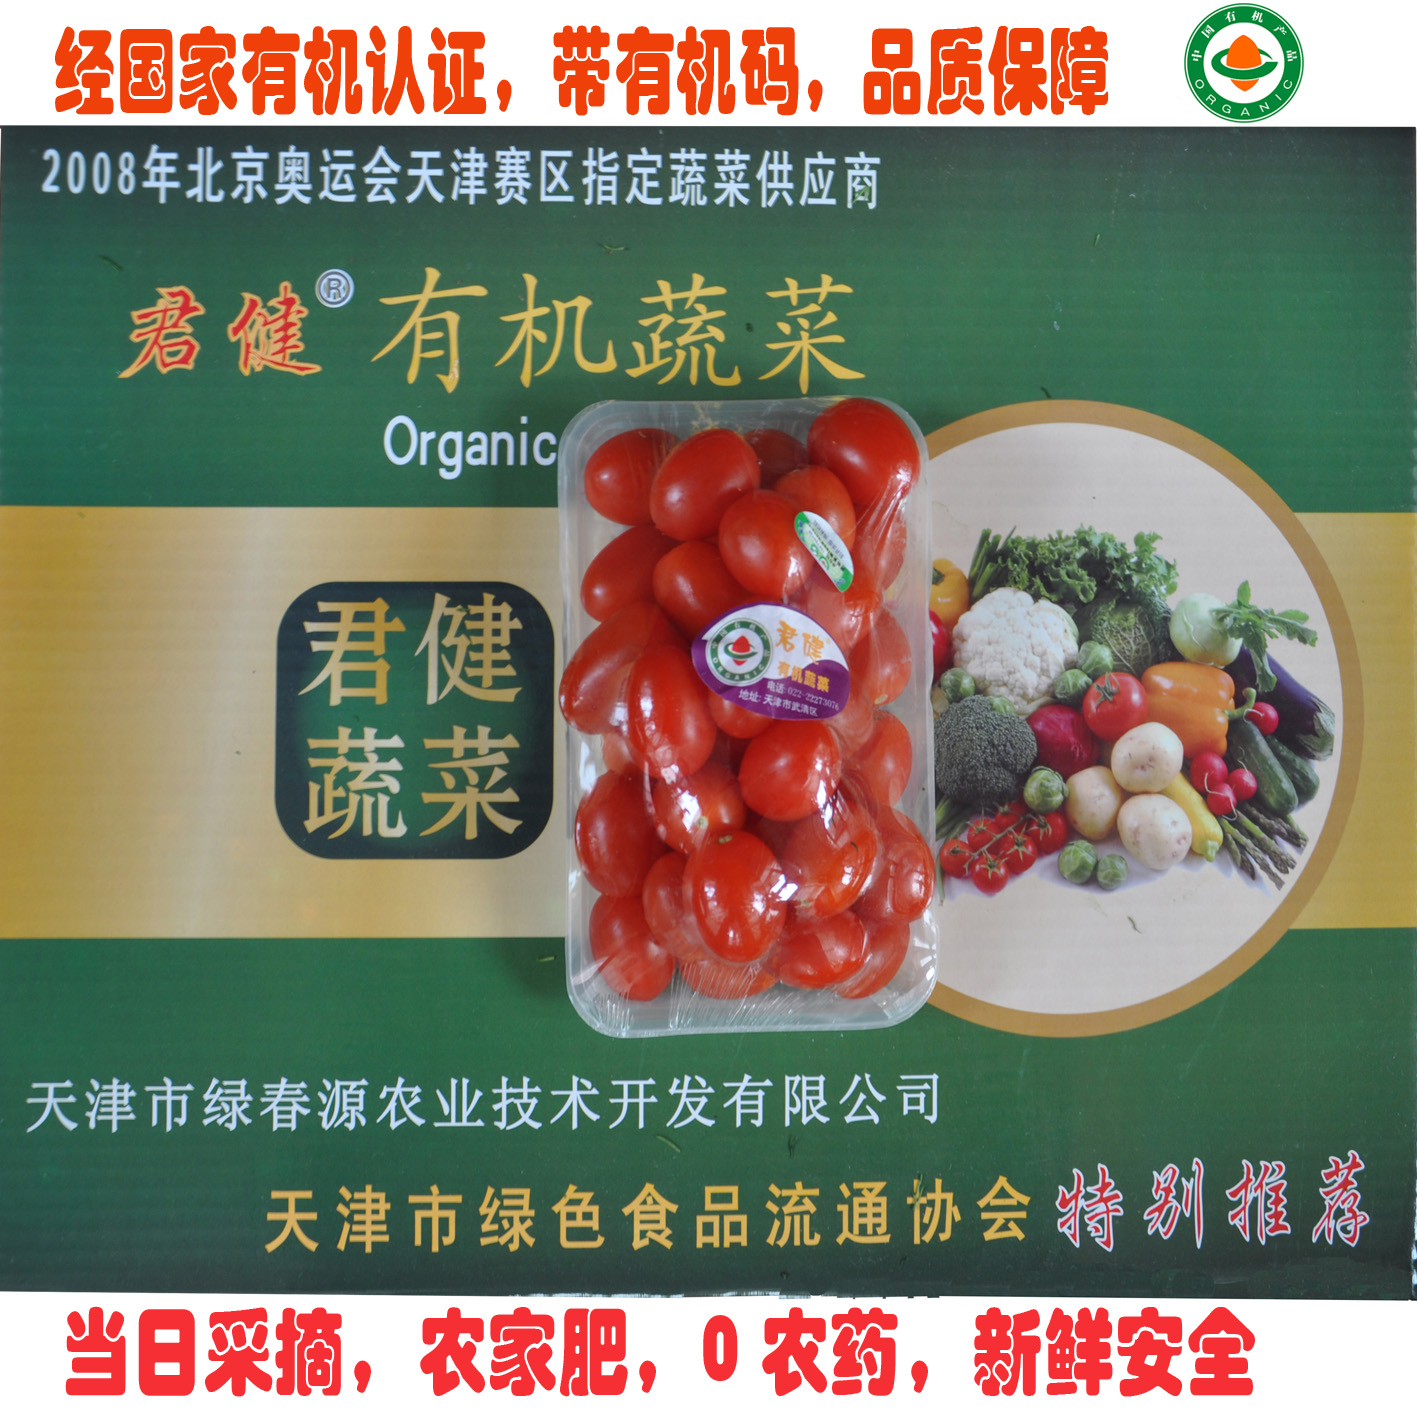 生鲜蔬菜 有机食品樱桃西红柿小番茄圣女果有机蔬菜天津同城配送